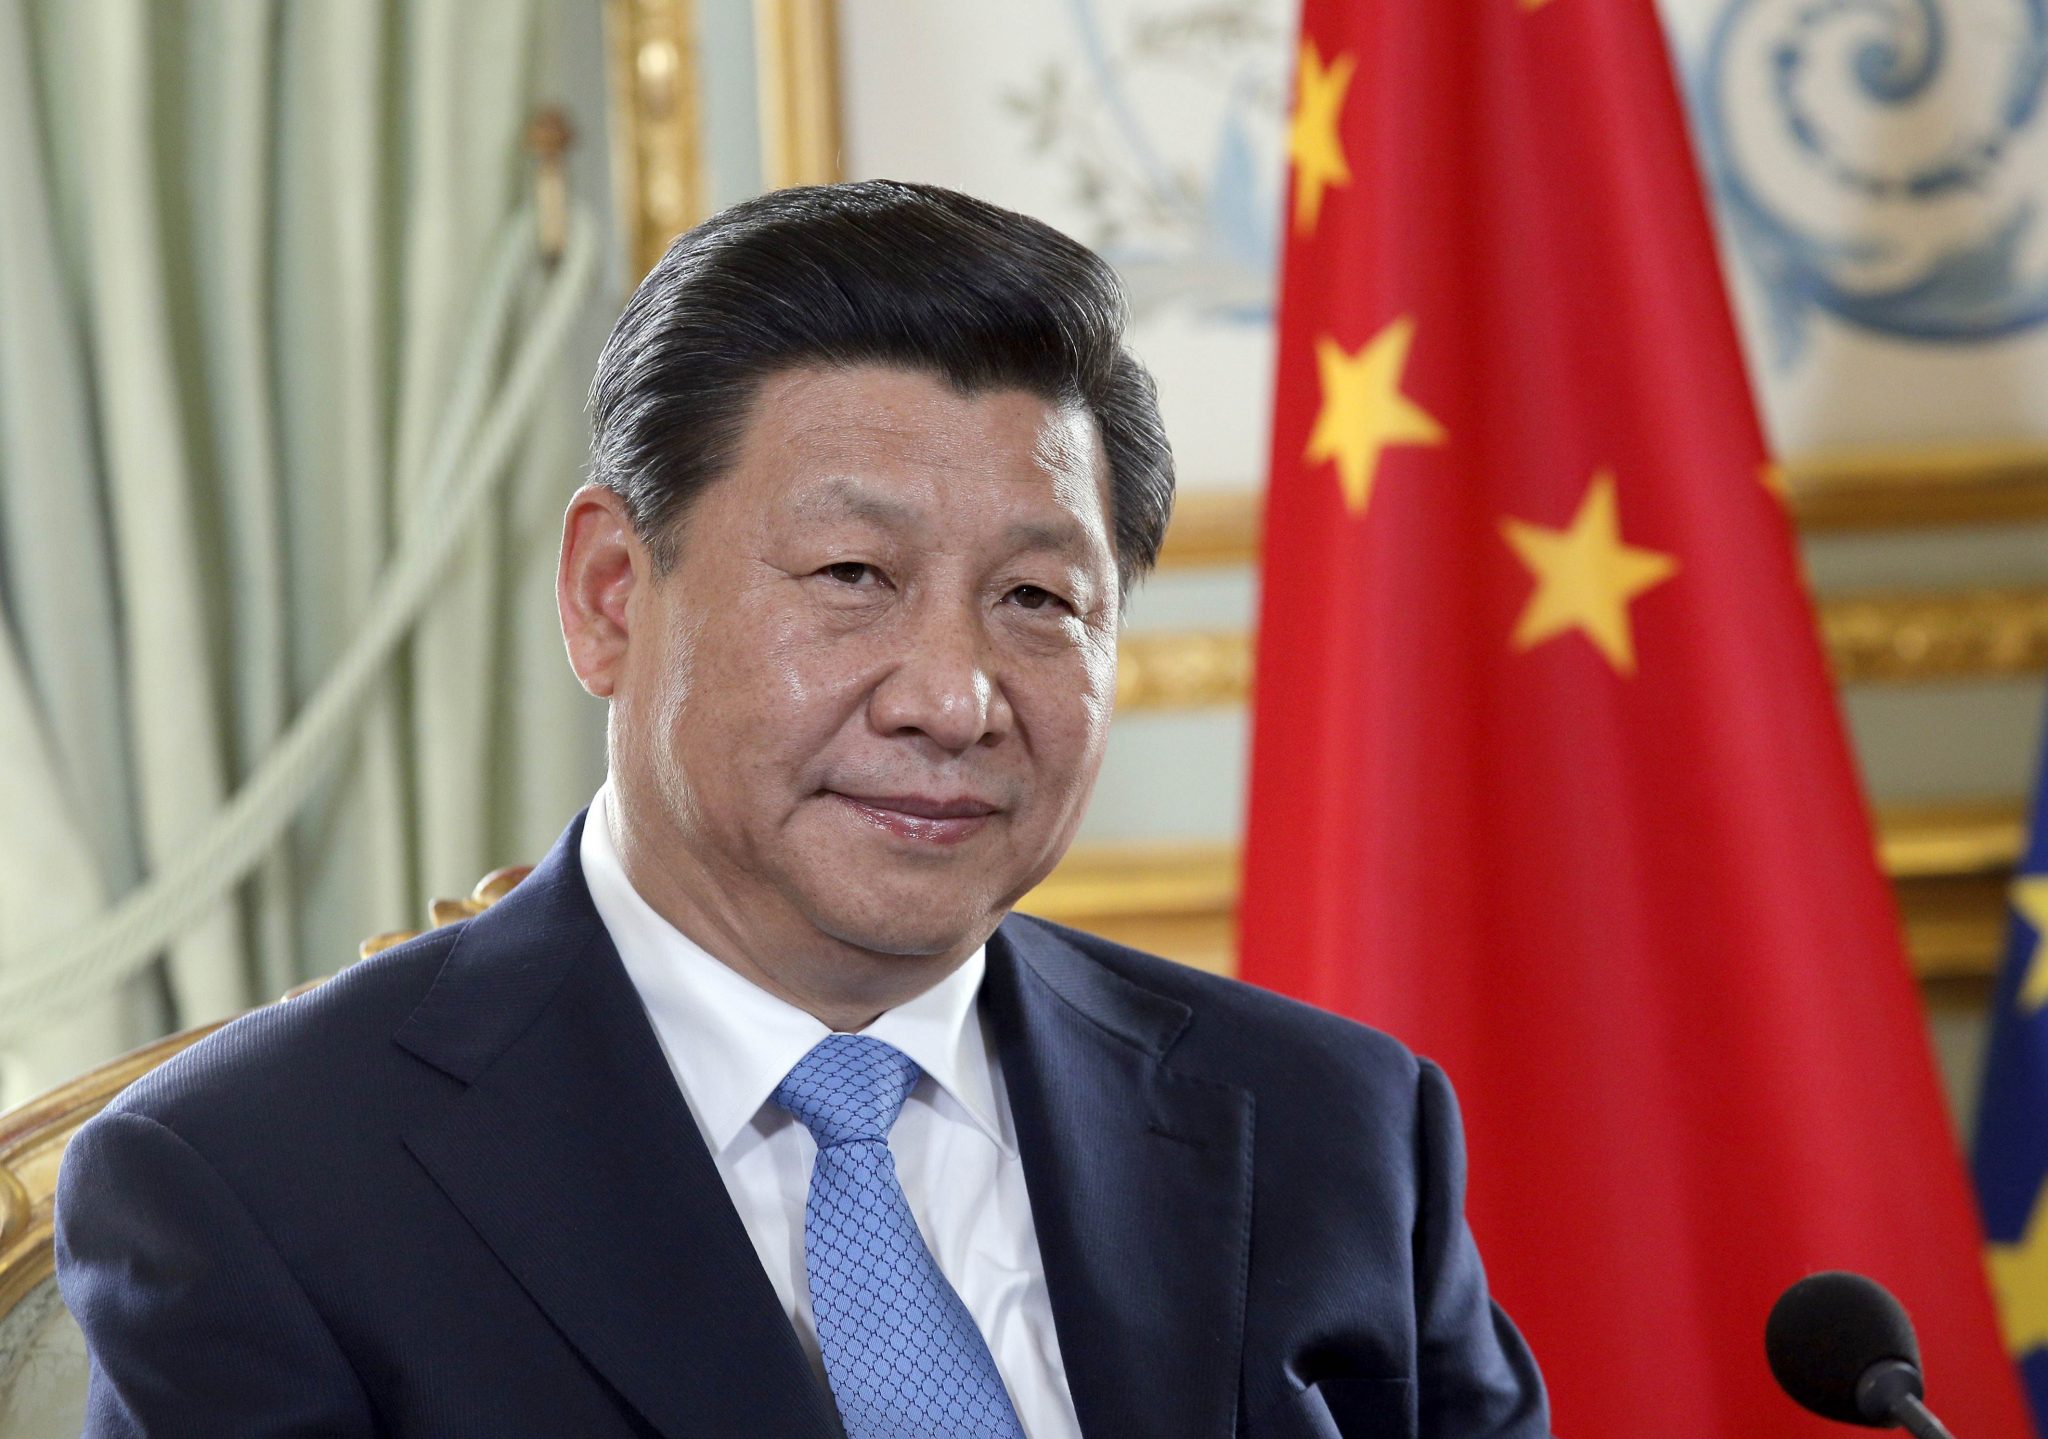   الرئيس الصينى يهنئ إيمانويل ماكرون على انتخابه رئيسا جديدا لفرنسا